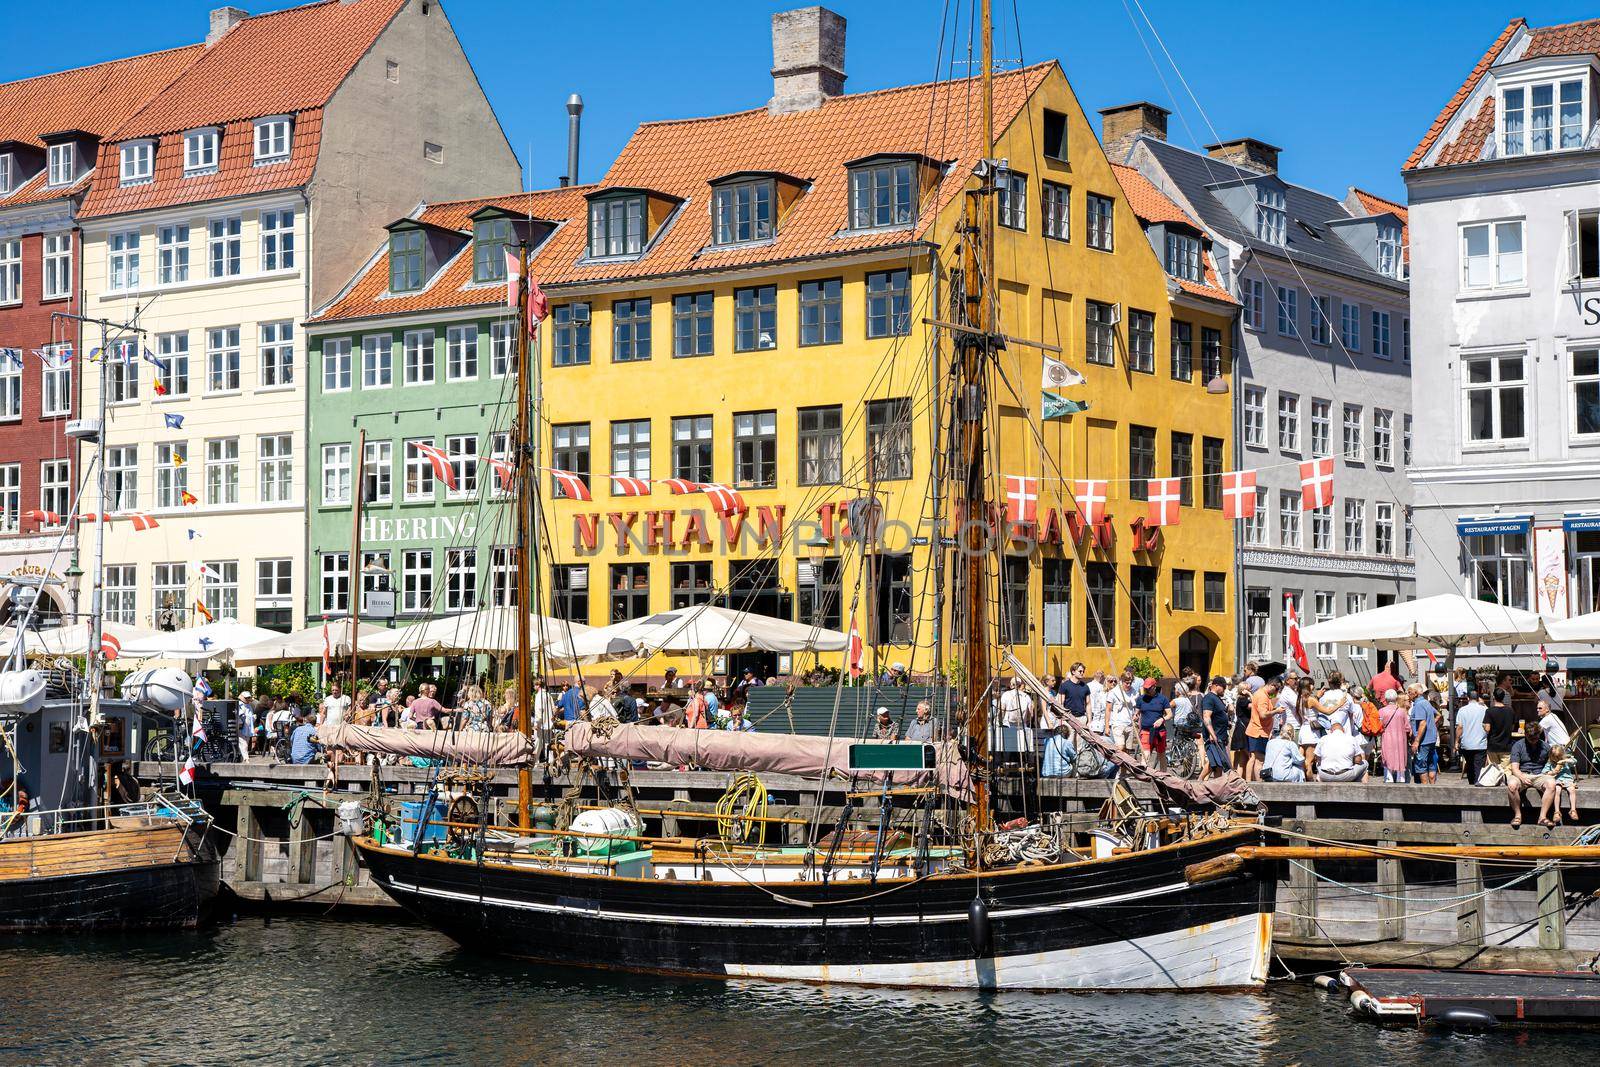 Iconic Nyhavn in Copenhagen, Denmark by oliverfoerstner